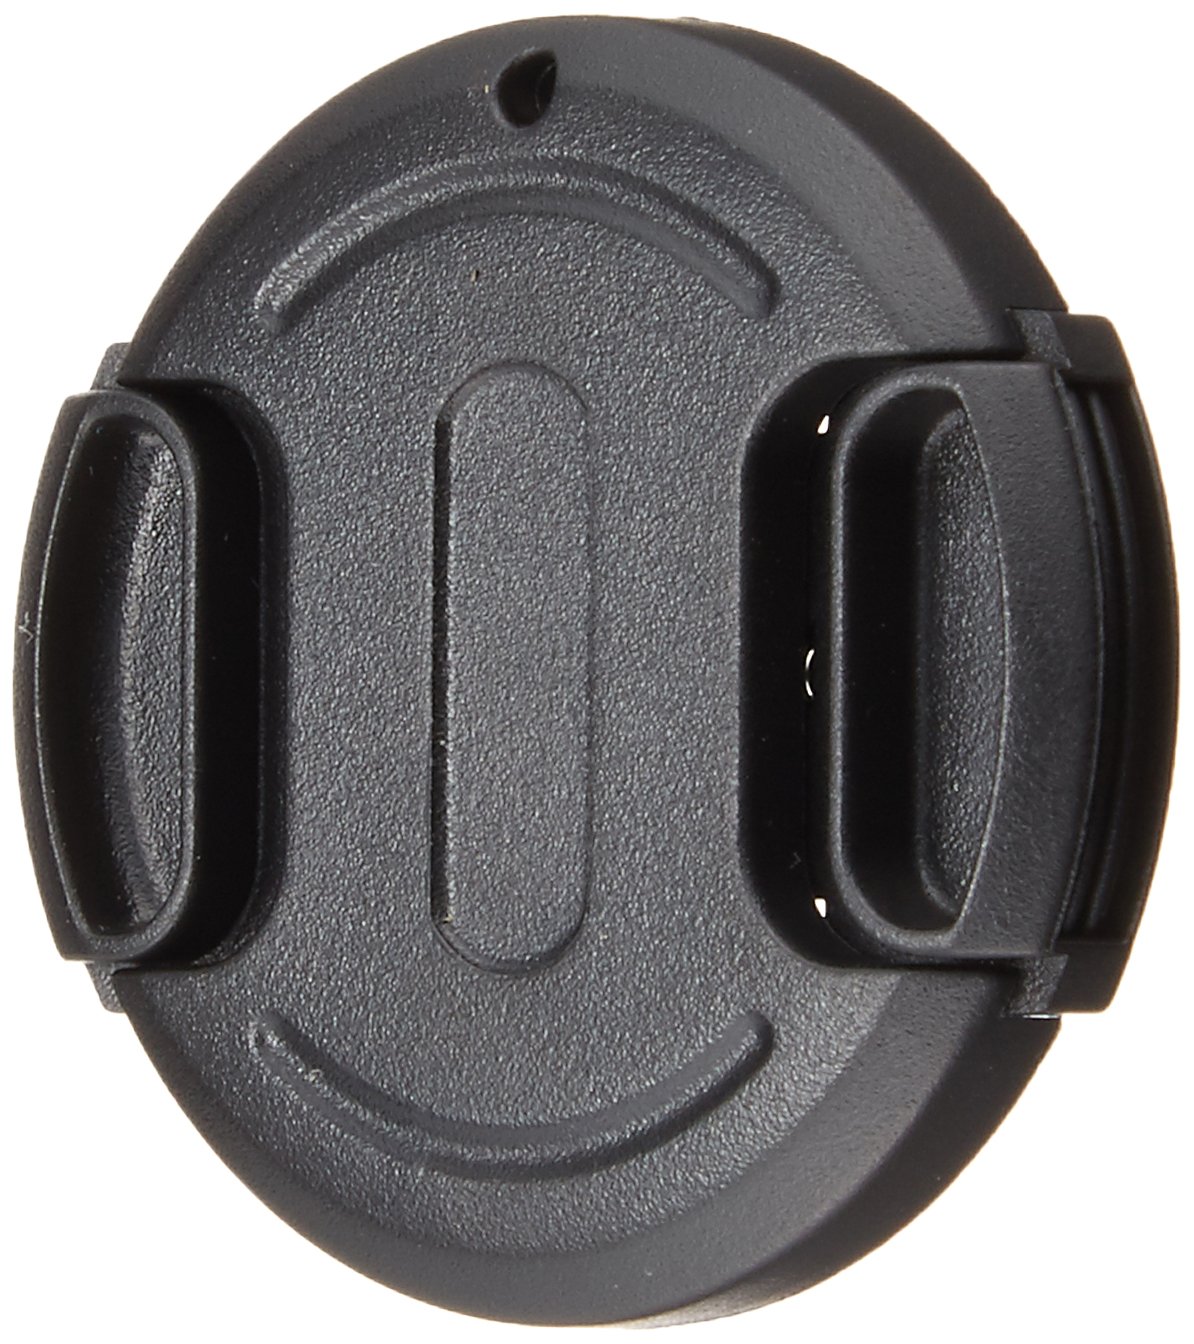 UN UNX-9501 One-Touch Lens Cap, 1.5 inches (37 mm), Black